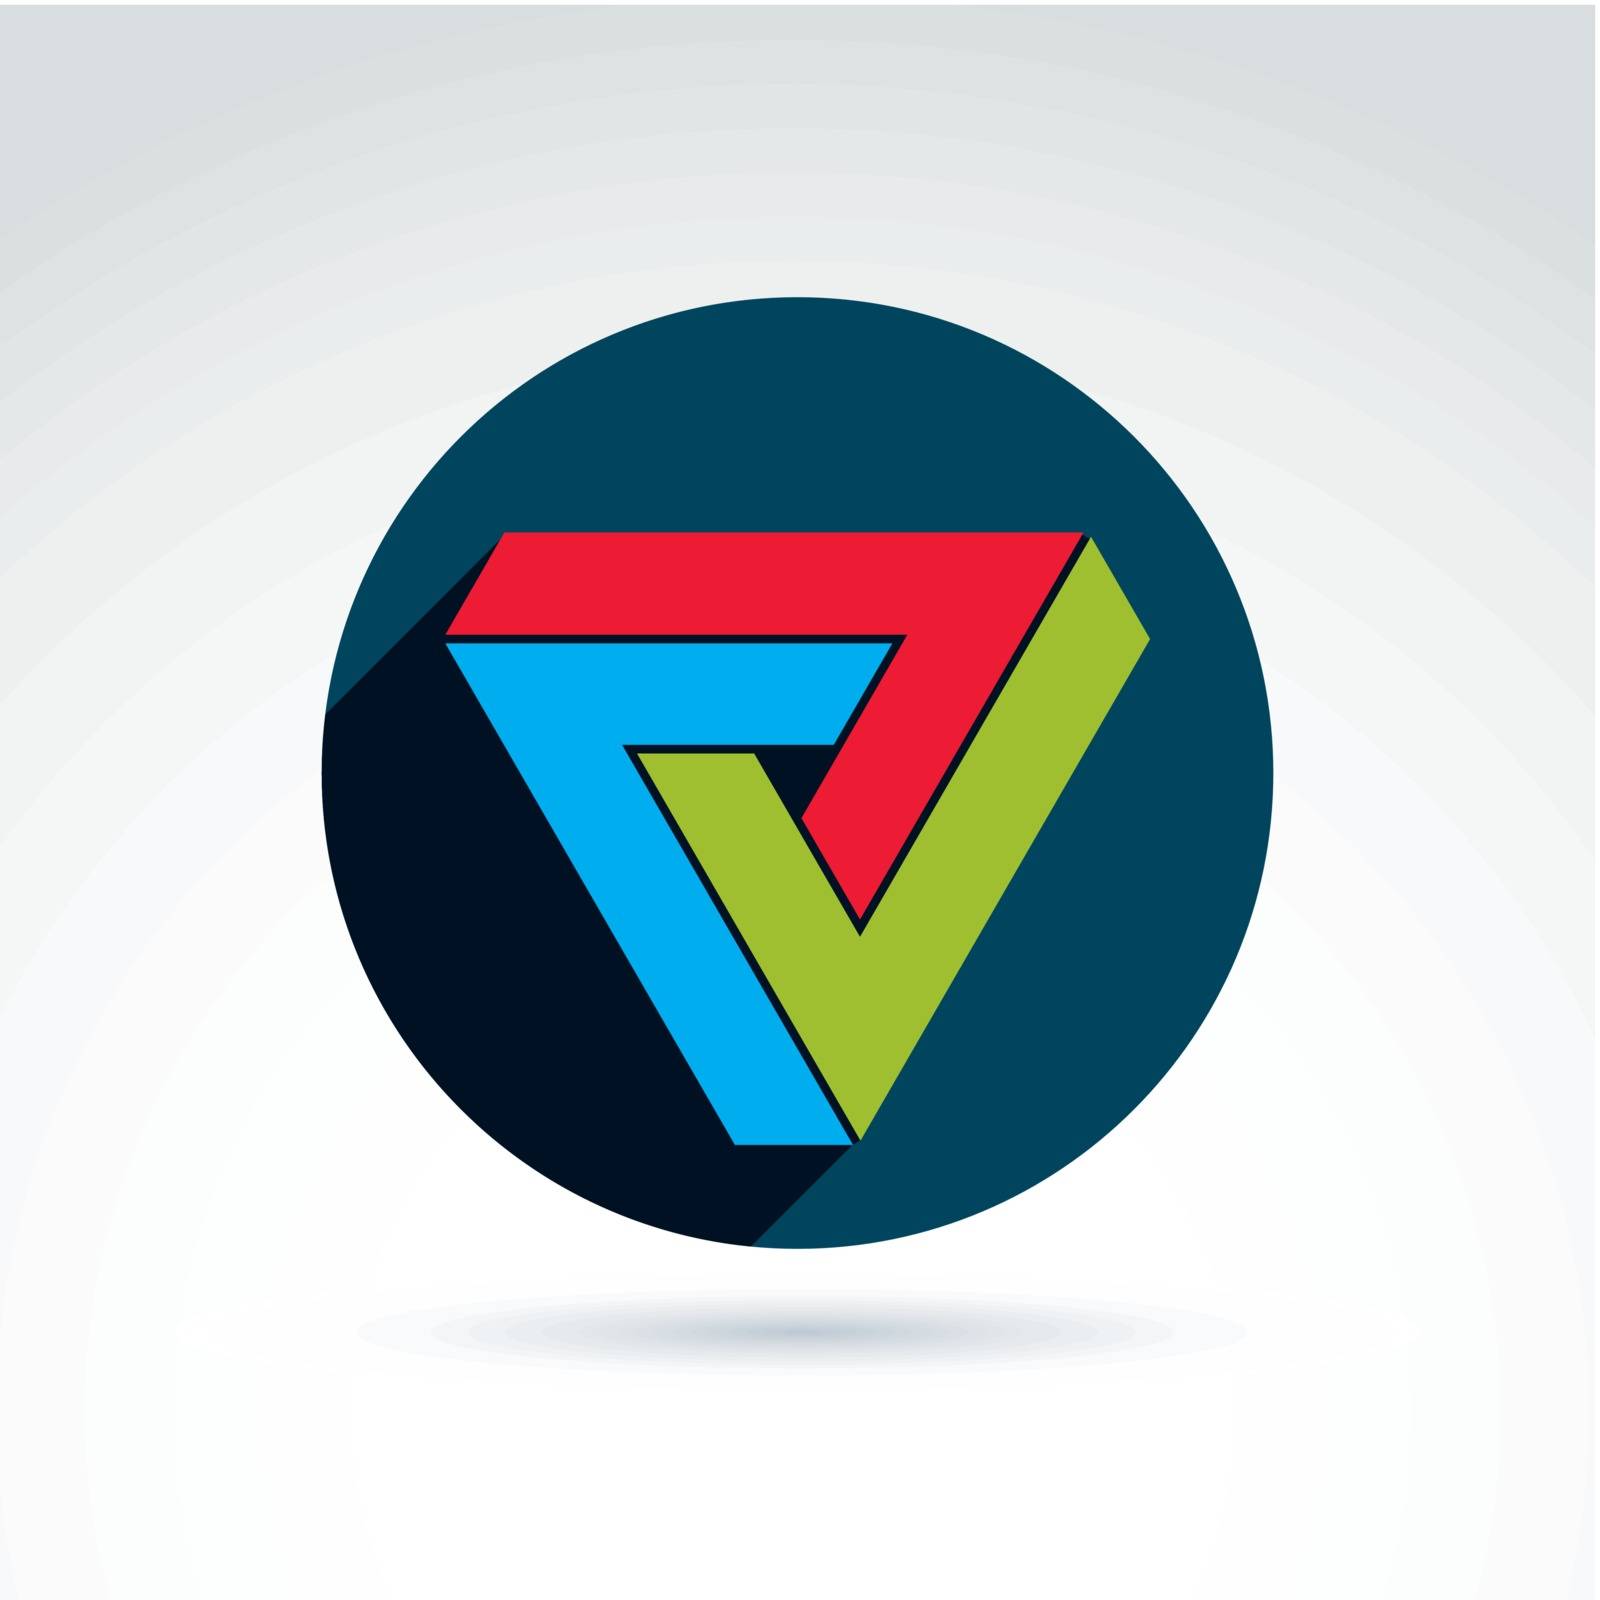 Abstract symbol, vector graphic design element, icon. by Sylverarts